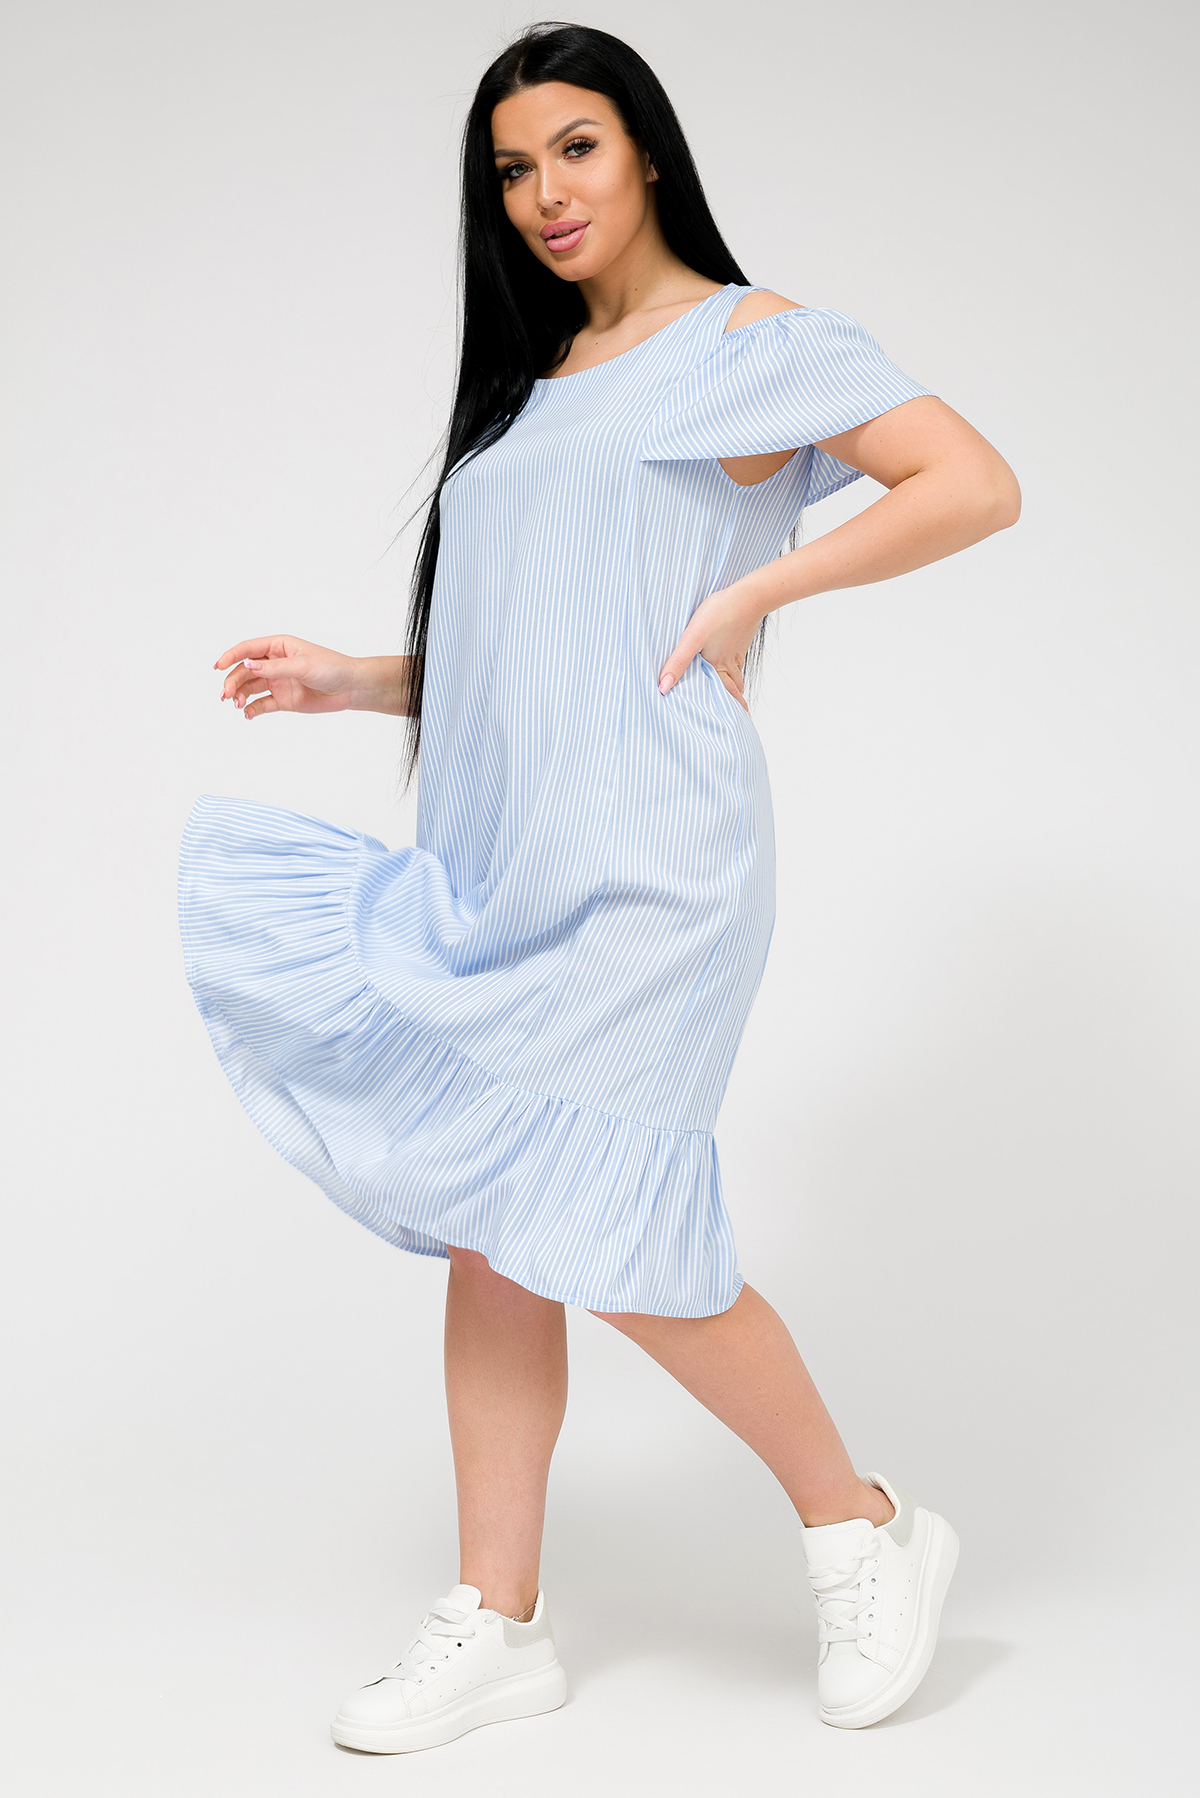 Платье женское Ш'аrliзе 0930 голубое 62 RU